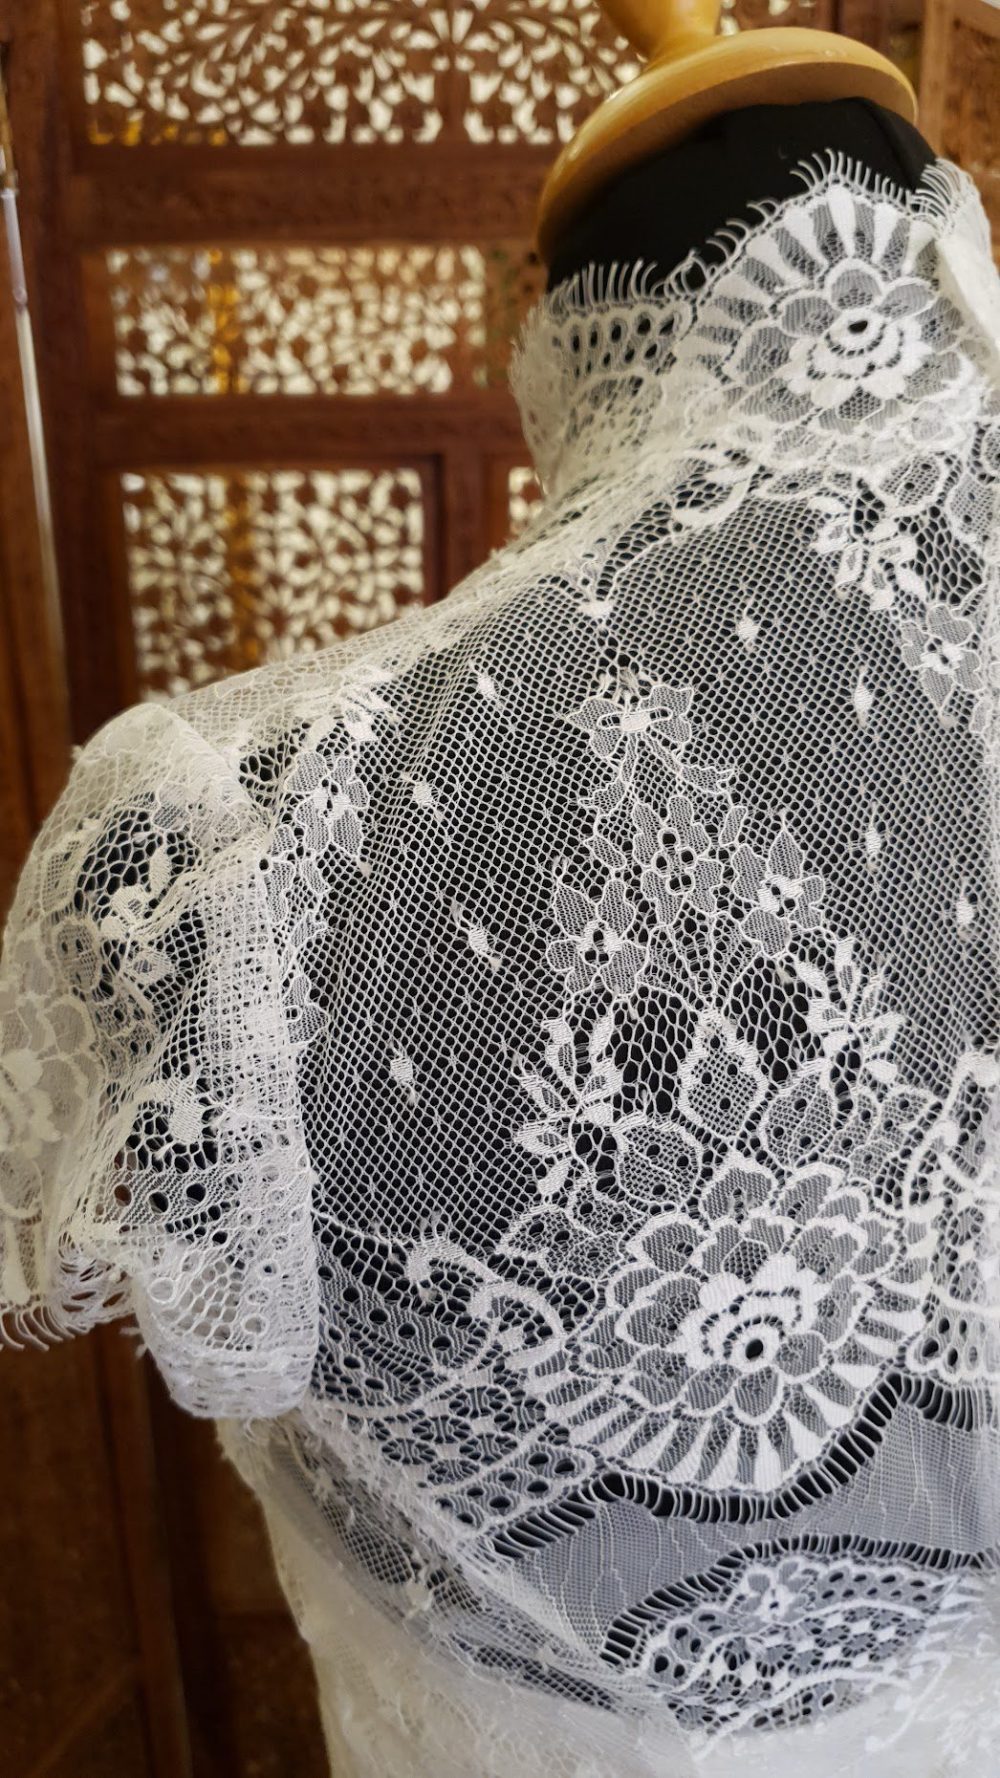 Fantastisk smuk brudekjole fra Rikke Gudnitz. Kjolen består af en inderkjole i satin og en ydre blondekjole med høj hals og små korte ærmer.